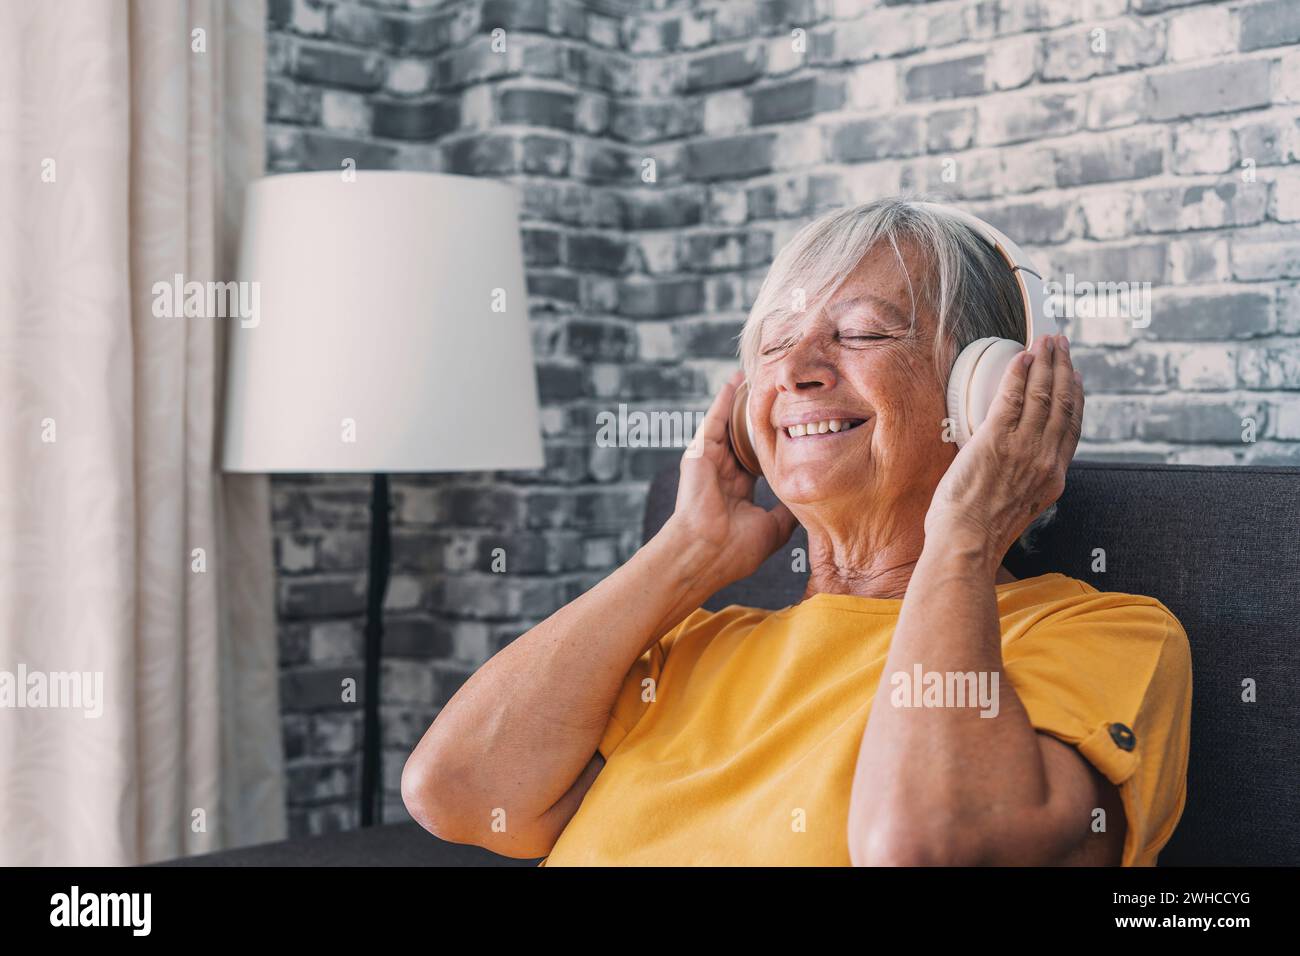 Vue latérale heureuse vieille femme retraitée mature écoutant de la musique populaire dans des écouteurs, se relaxant seul sur un canapé confortable, profitant du temps de week-end paisible et insouciant a Banque D'Images